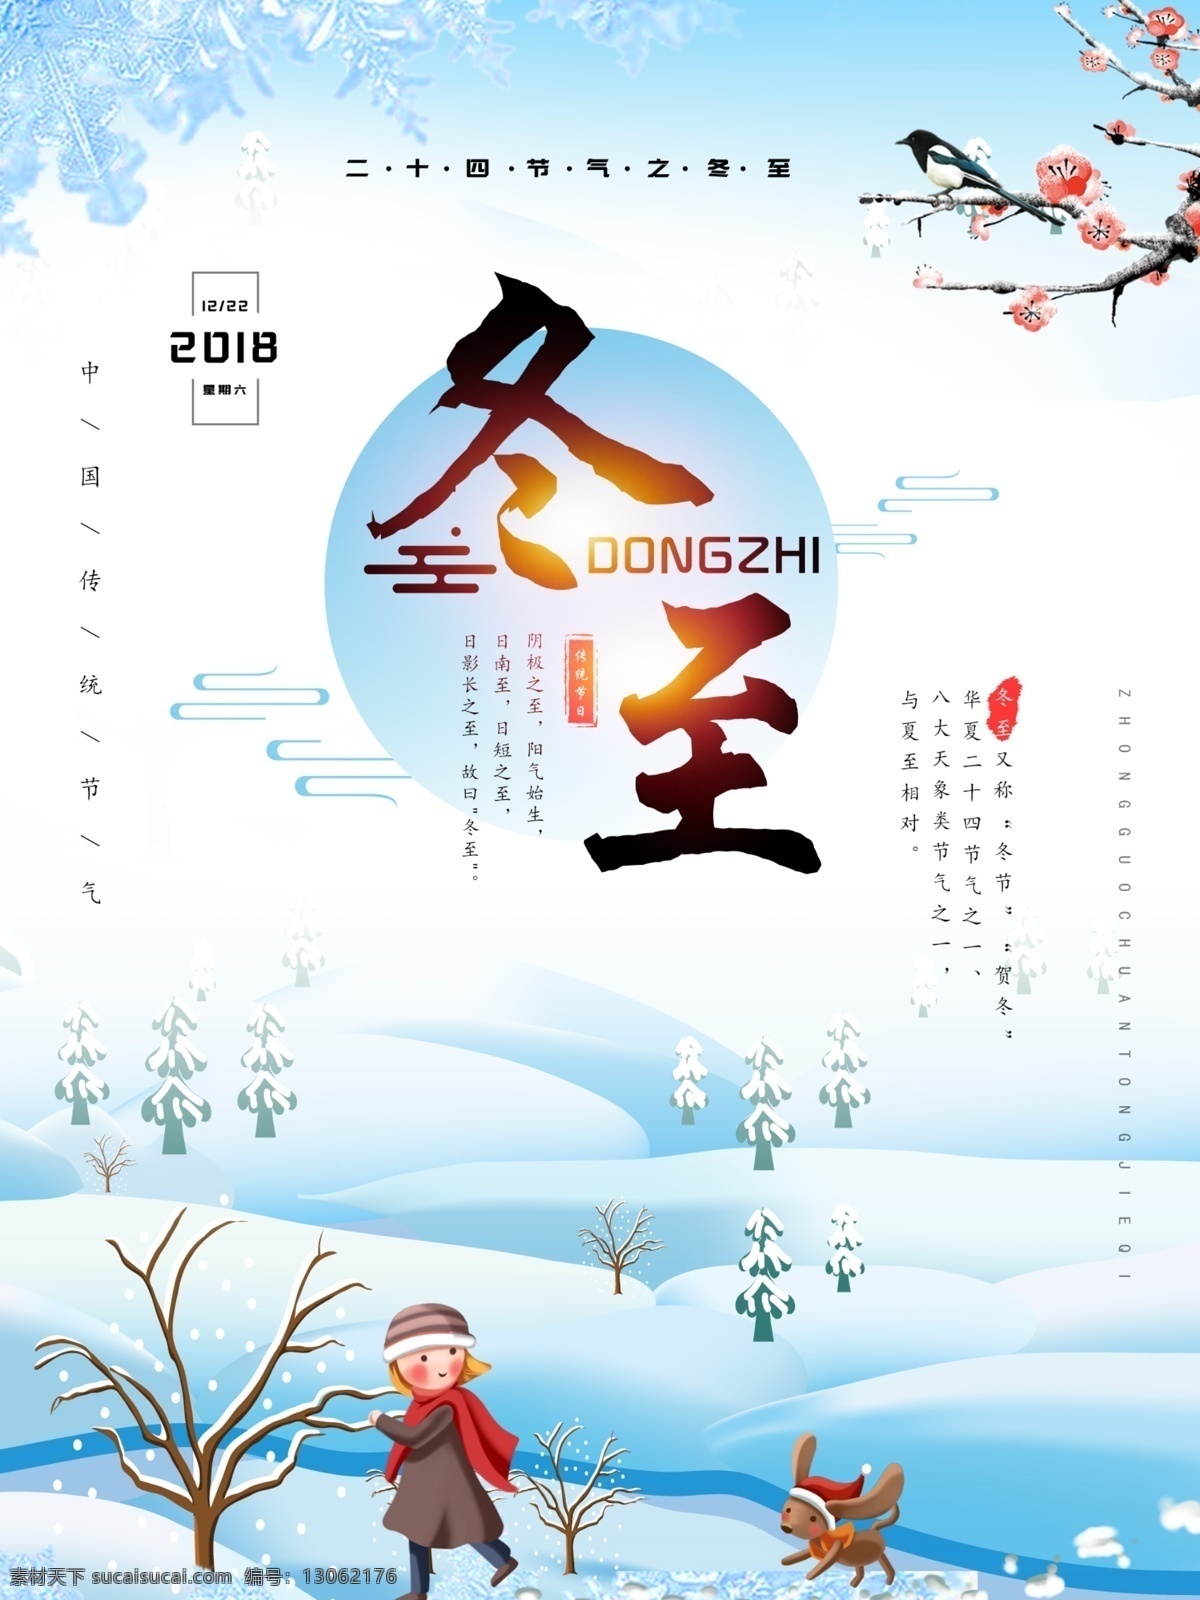 立冬 冬至 二十四节气 原创 卡通 可爱 雪景 插画 狗 节气 蓝色系